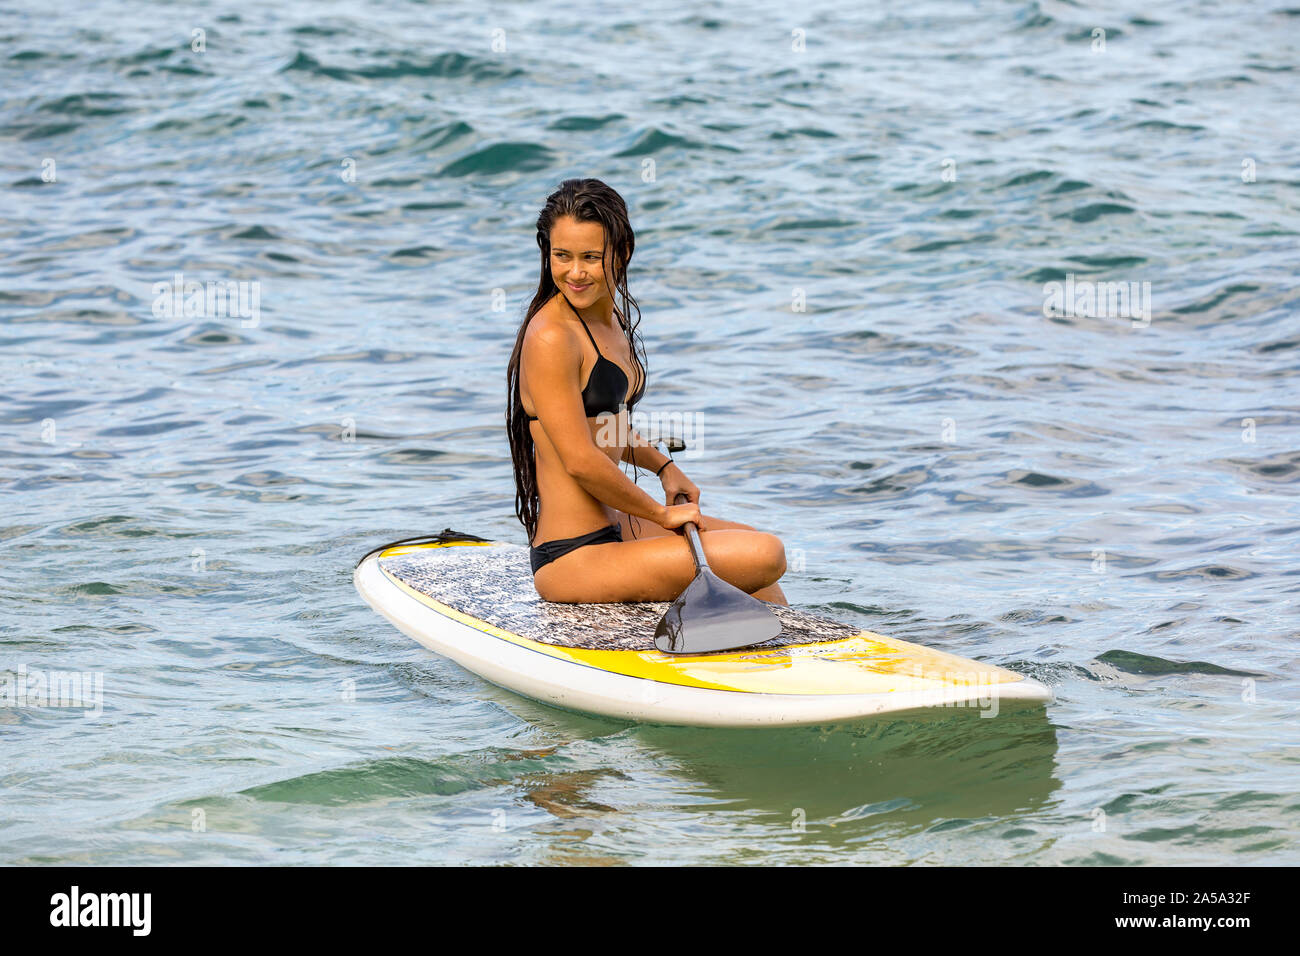 Una ragazza seduta su uno stand up paddle board, Hawaii. Questa fotografia è il modello rilasciato. Foto Stock